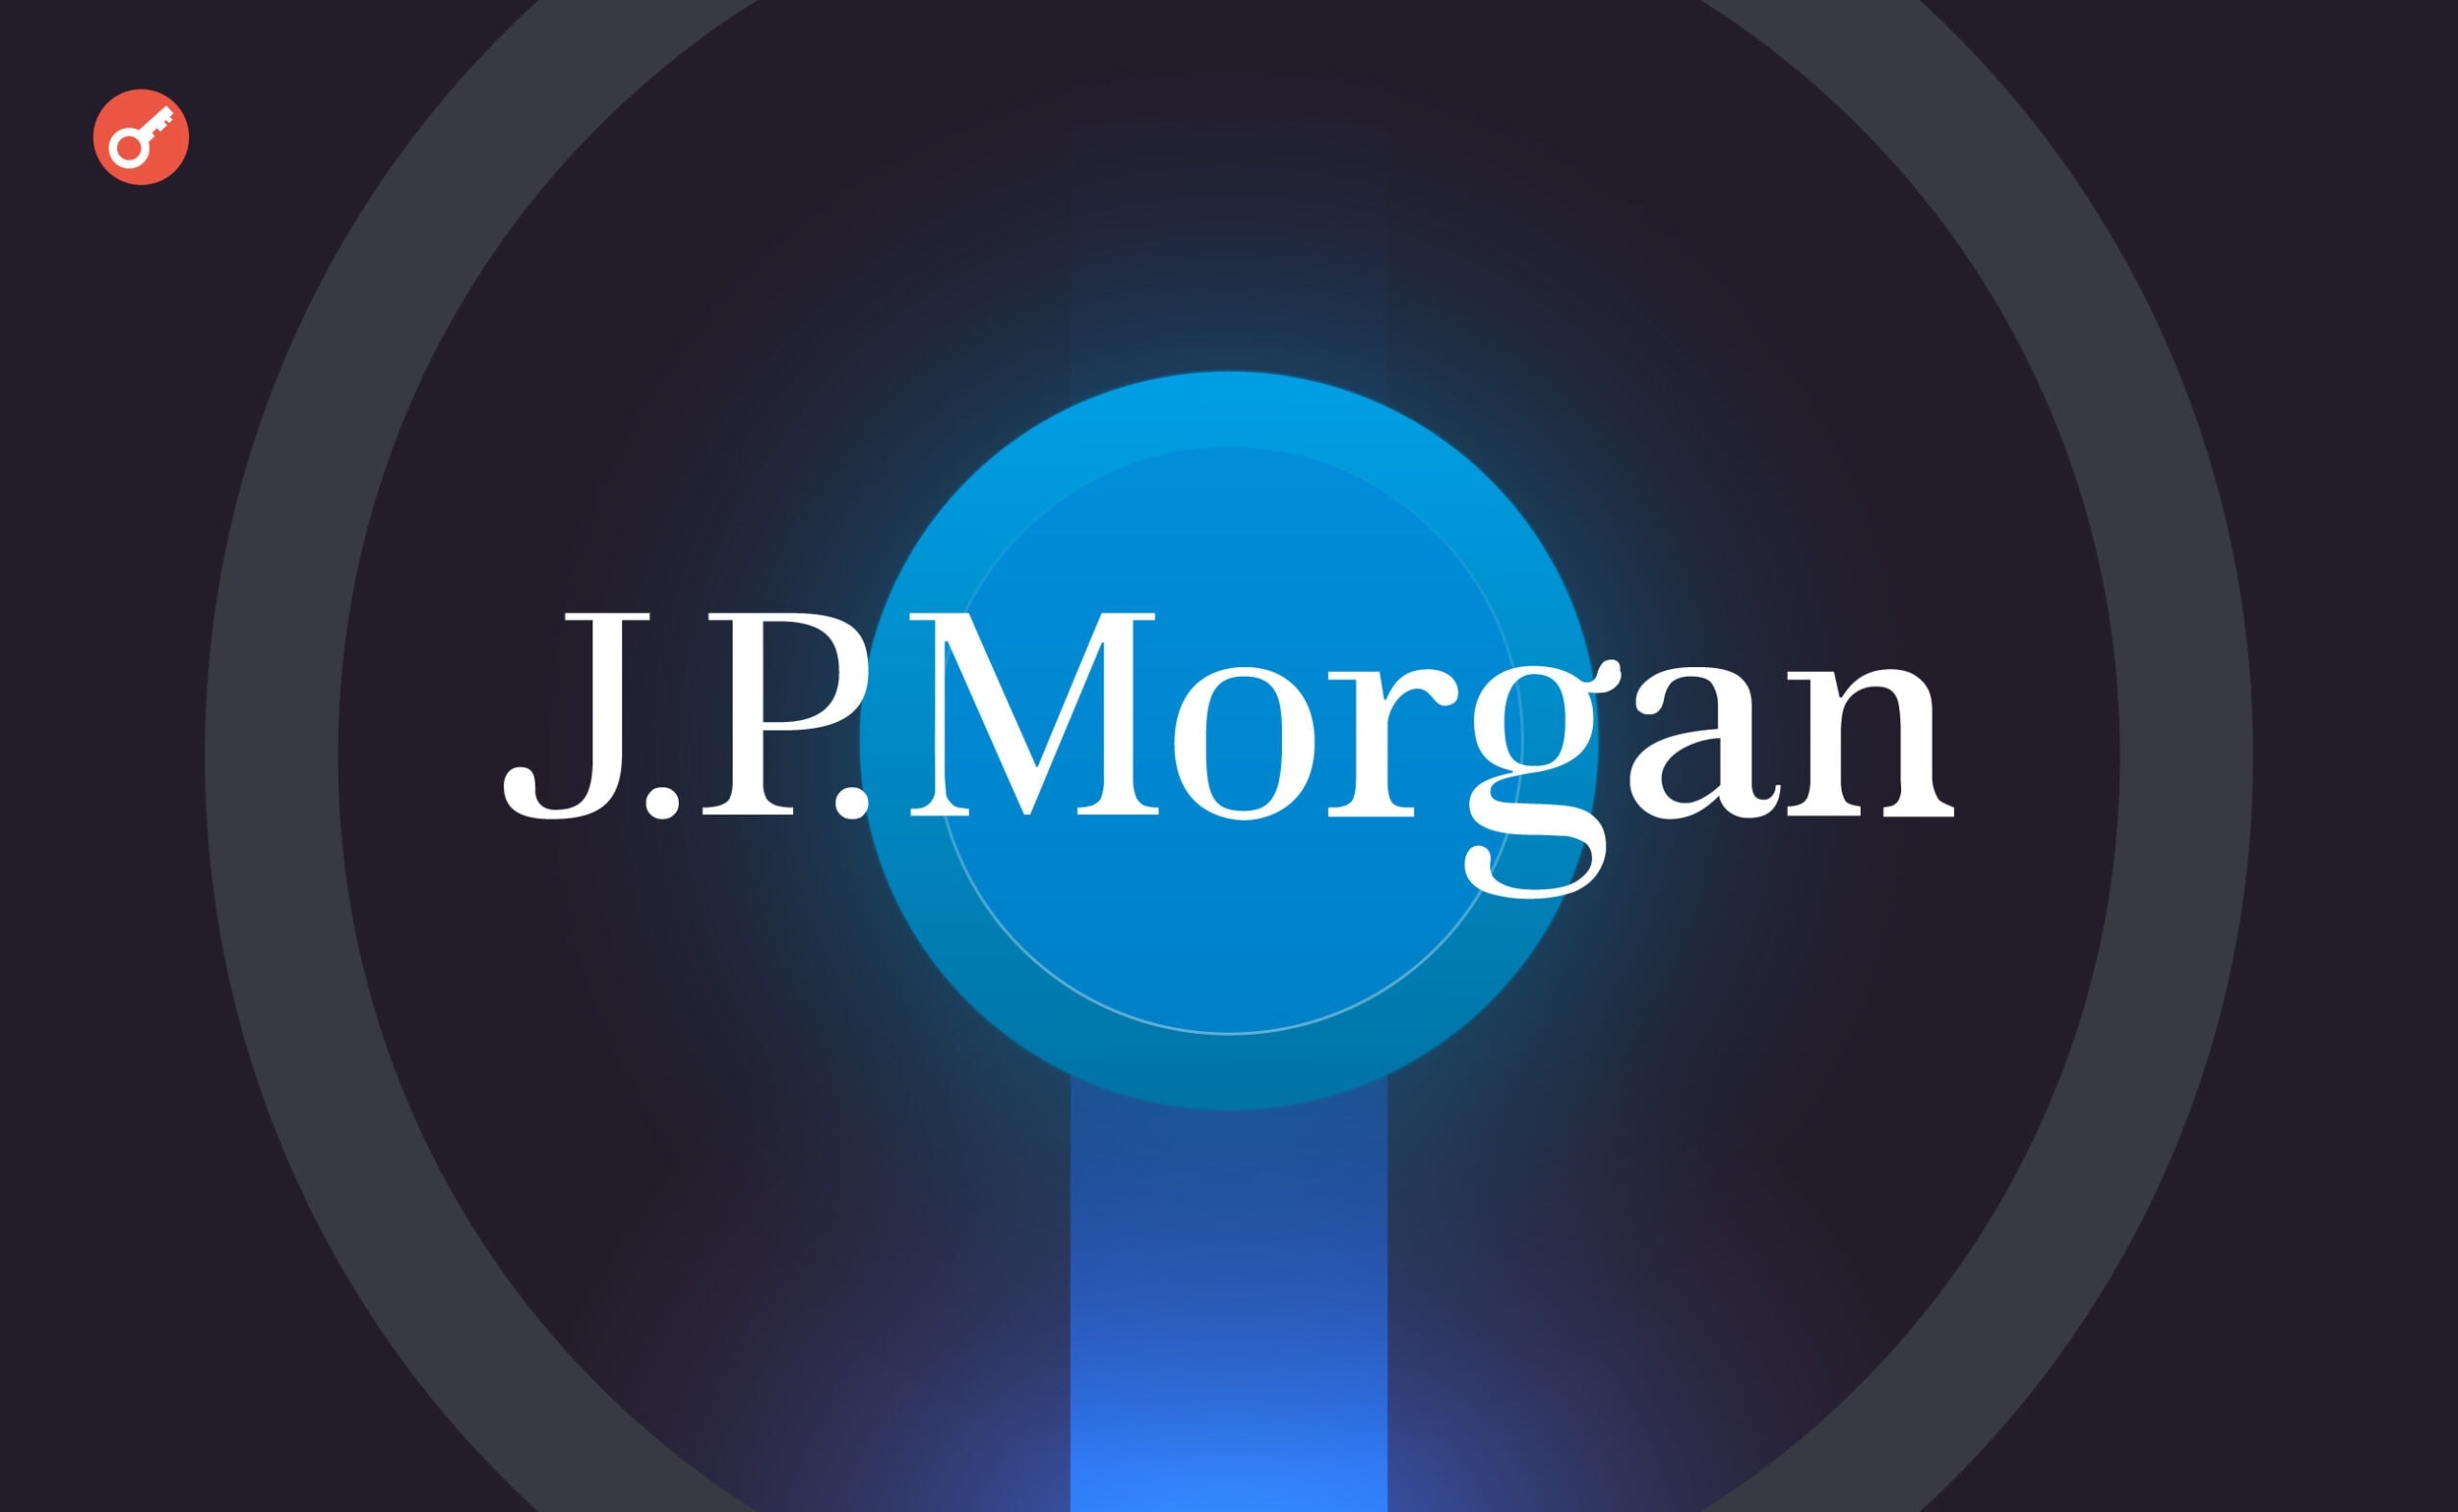 СМИ: JPMorgan Chase планирует запуск депозитного токена в США. Заглавный коллаж новости.